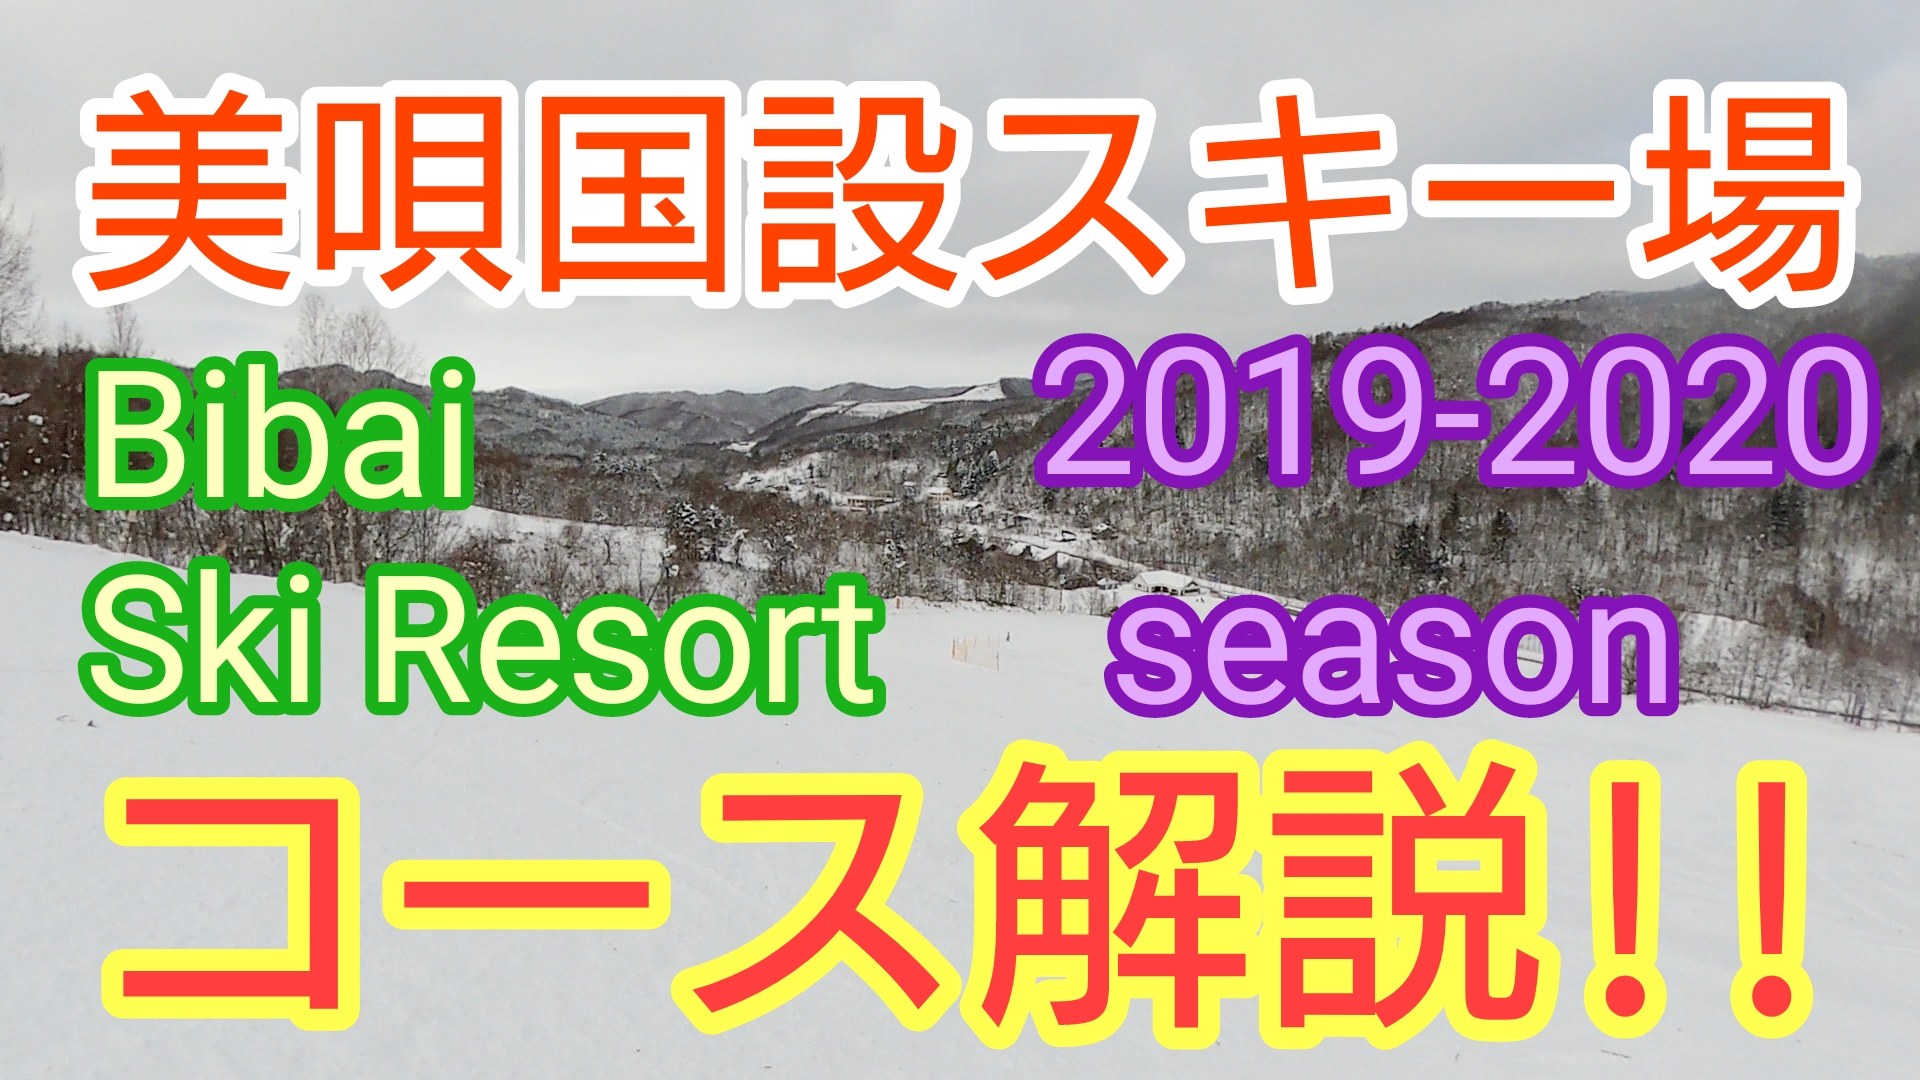 20192020シーズン(Season)美唄国設スキー場(BIBAI KOKUSETSU SKI resort)のコースの雪質や積雪をブログで紹介!